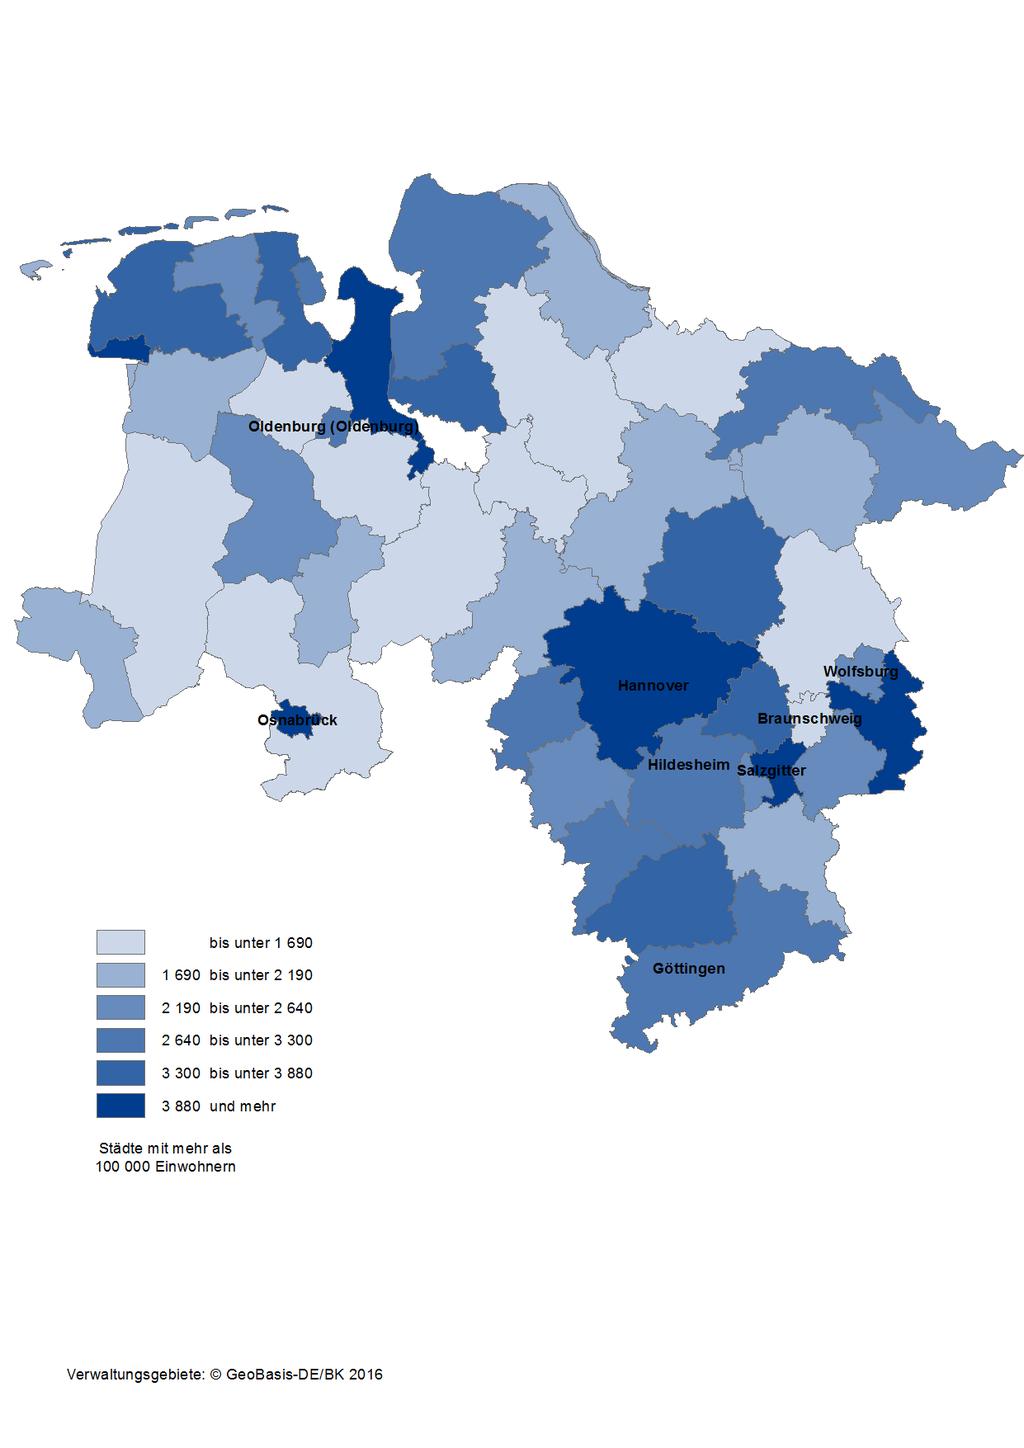 Karte 11: Integrierte kommunale Schulden der Kreisgebiete und kreisfreien Städte in Niedersachsen am 31.12.